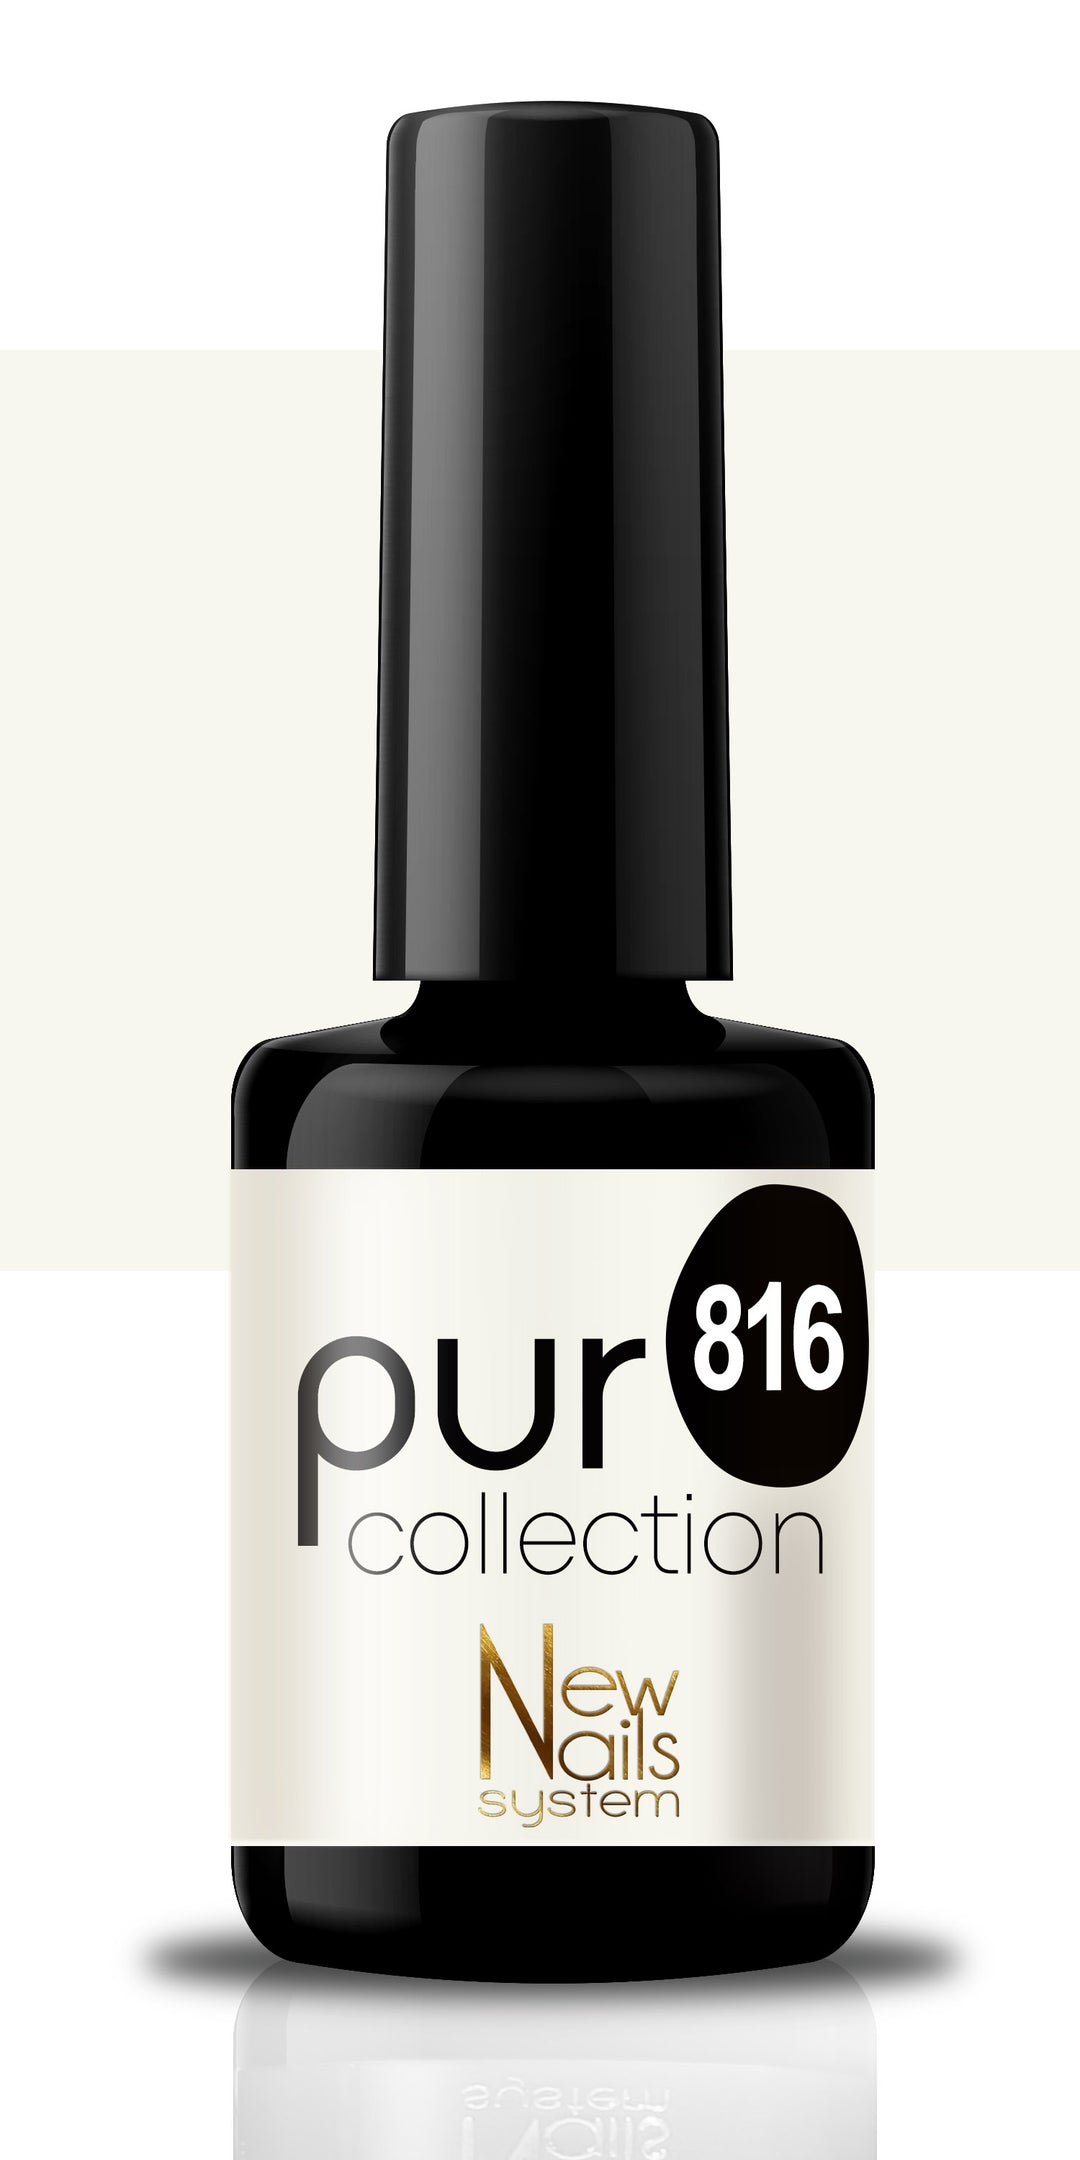 Puro collection 816 colore Black & White semipermanente 5ml